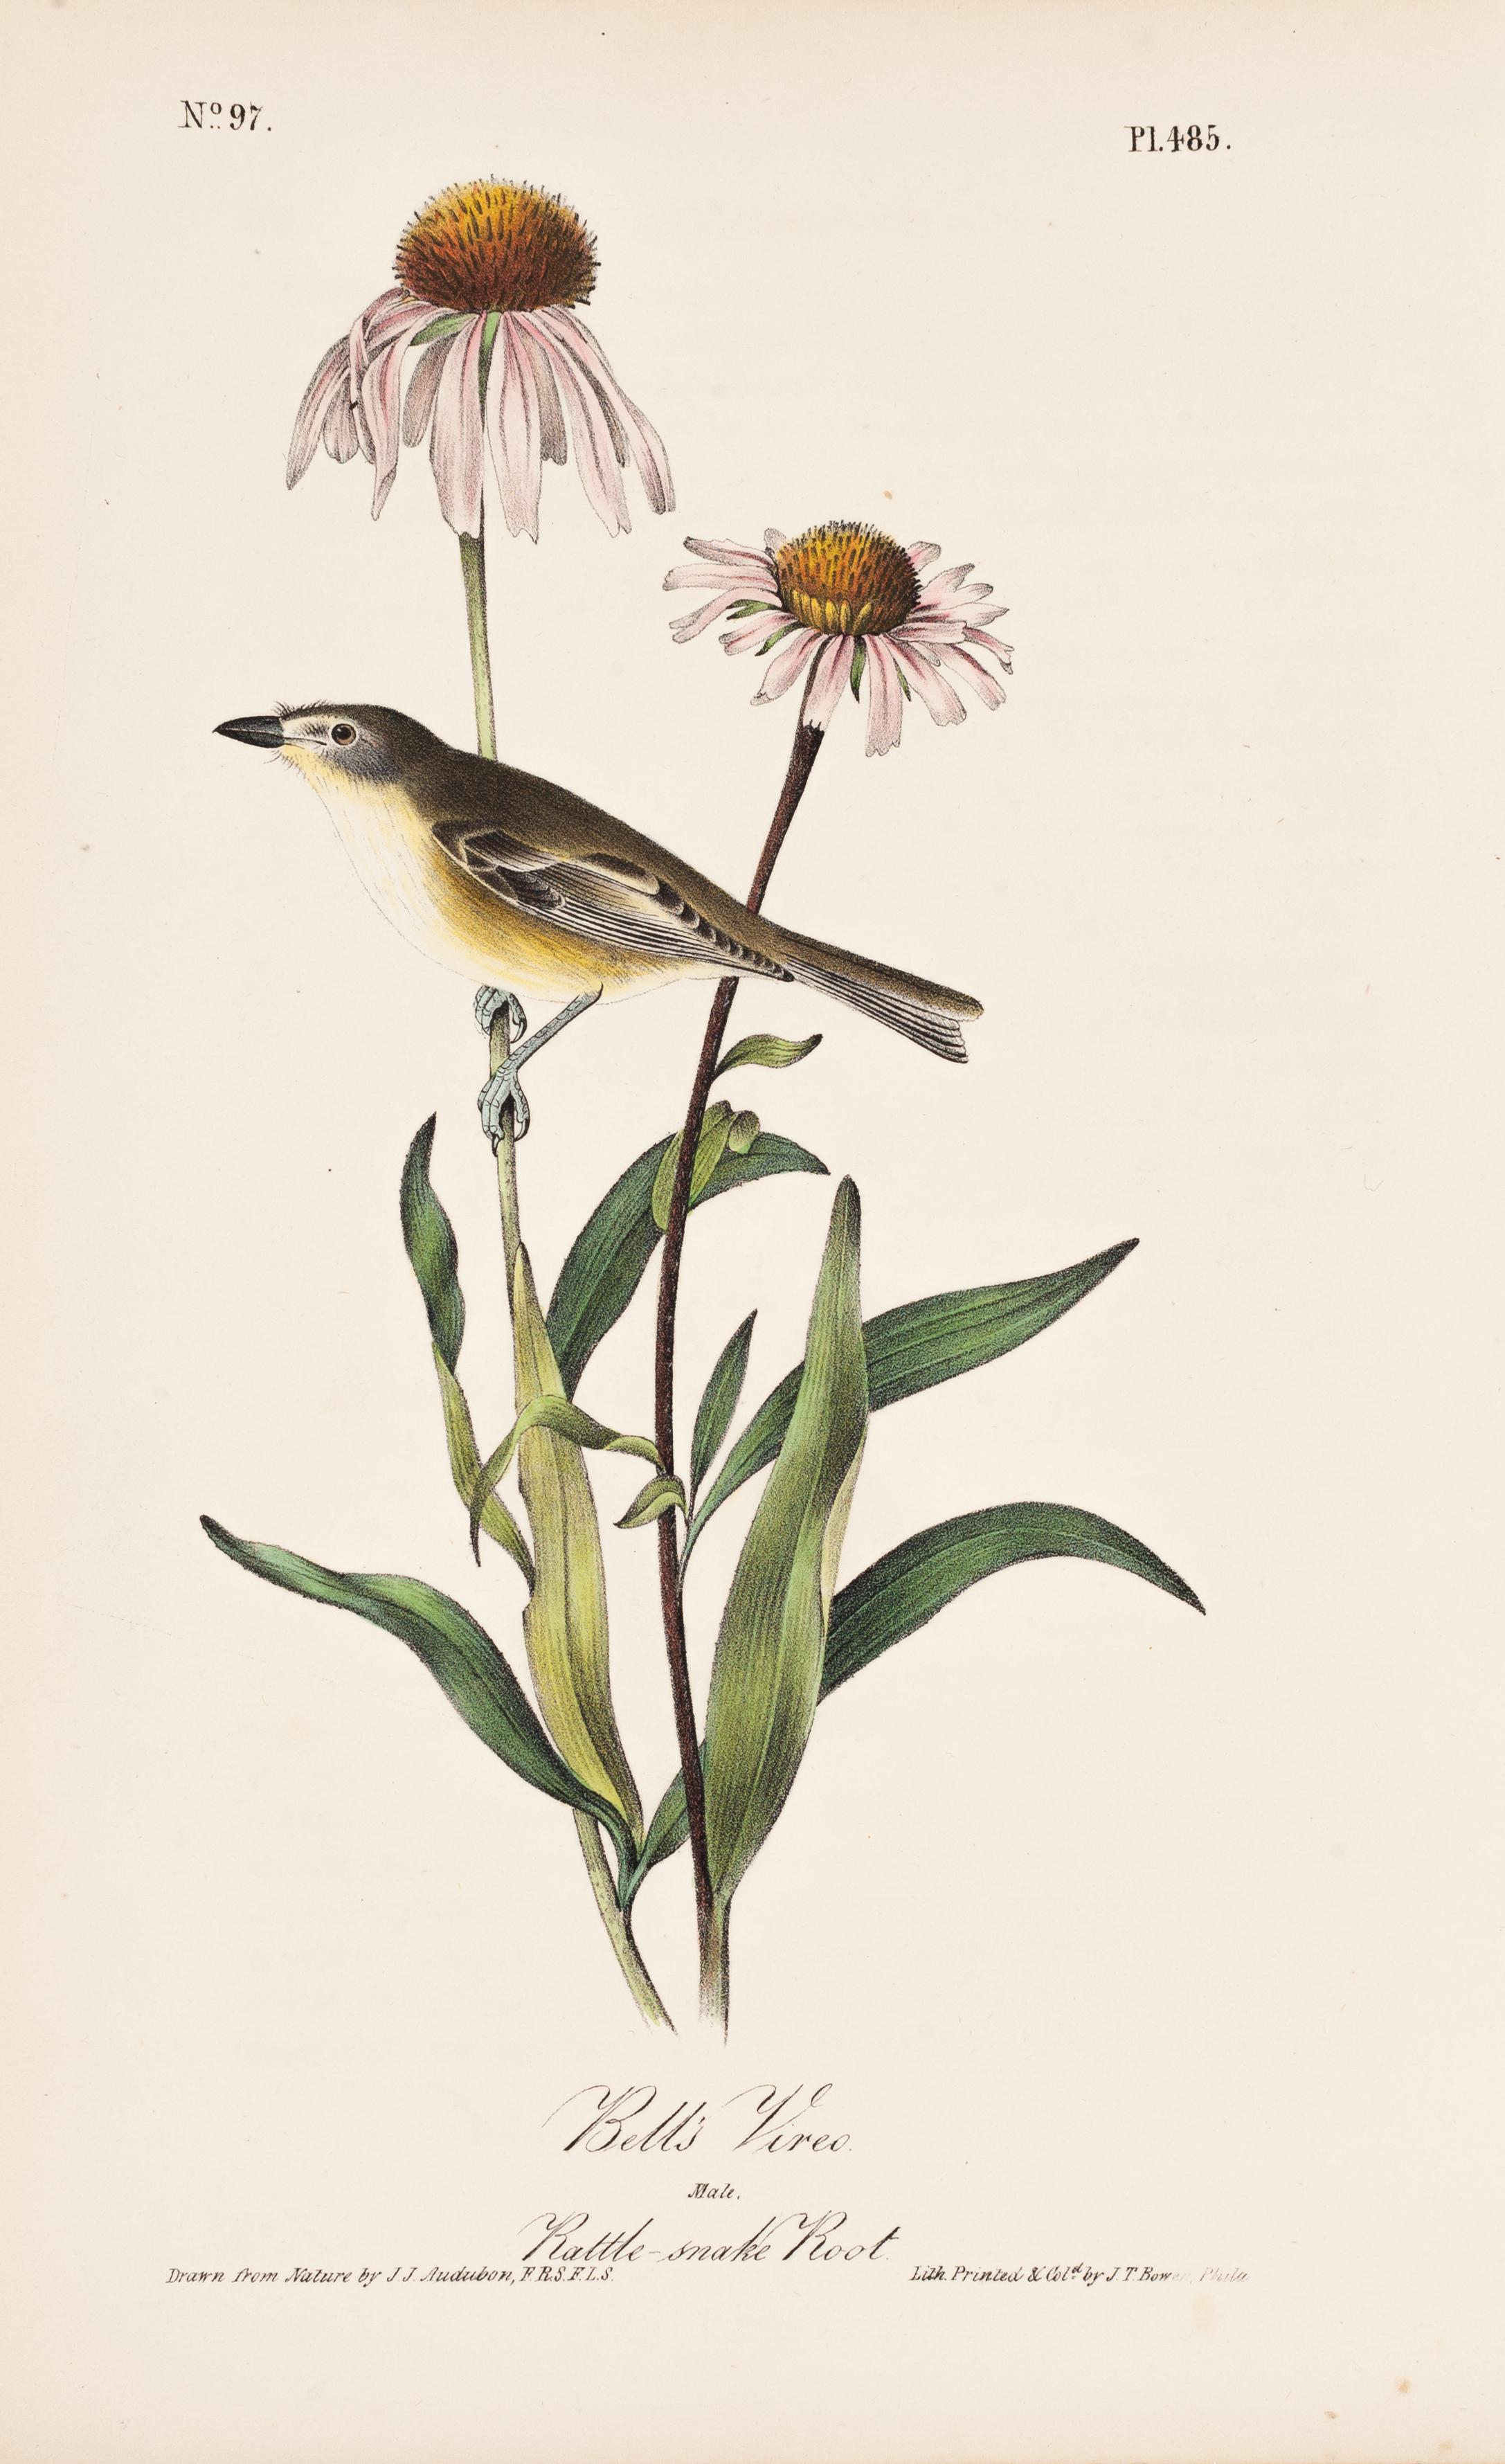 John James Audubon Animal Print – "Bell's Vireo" Teller "Die Vögel Amerikas" 485